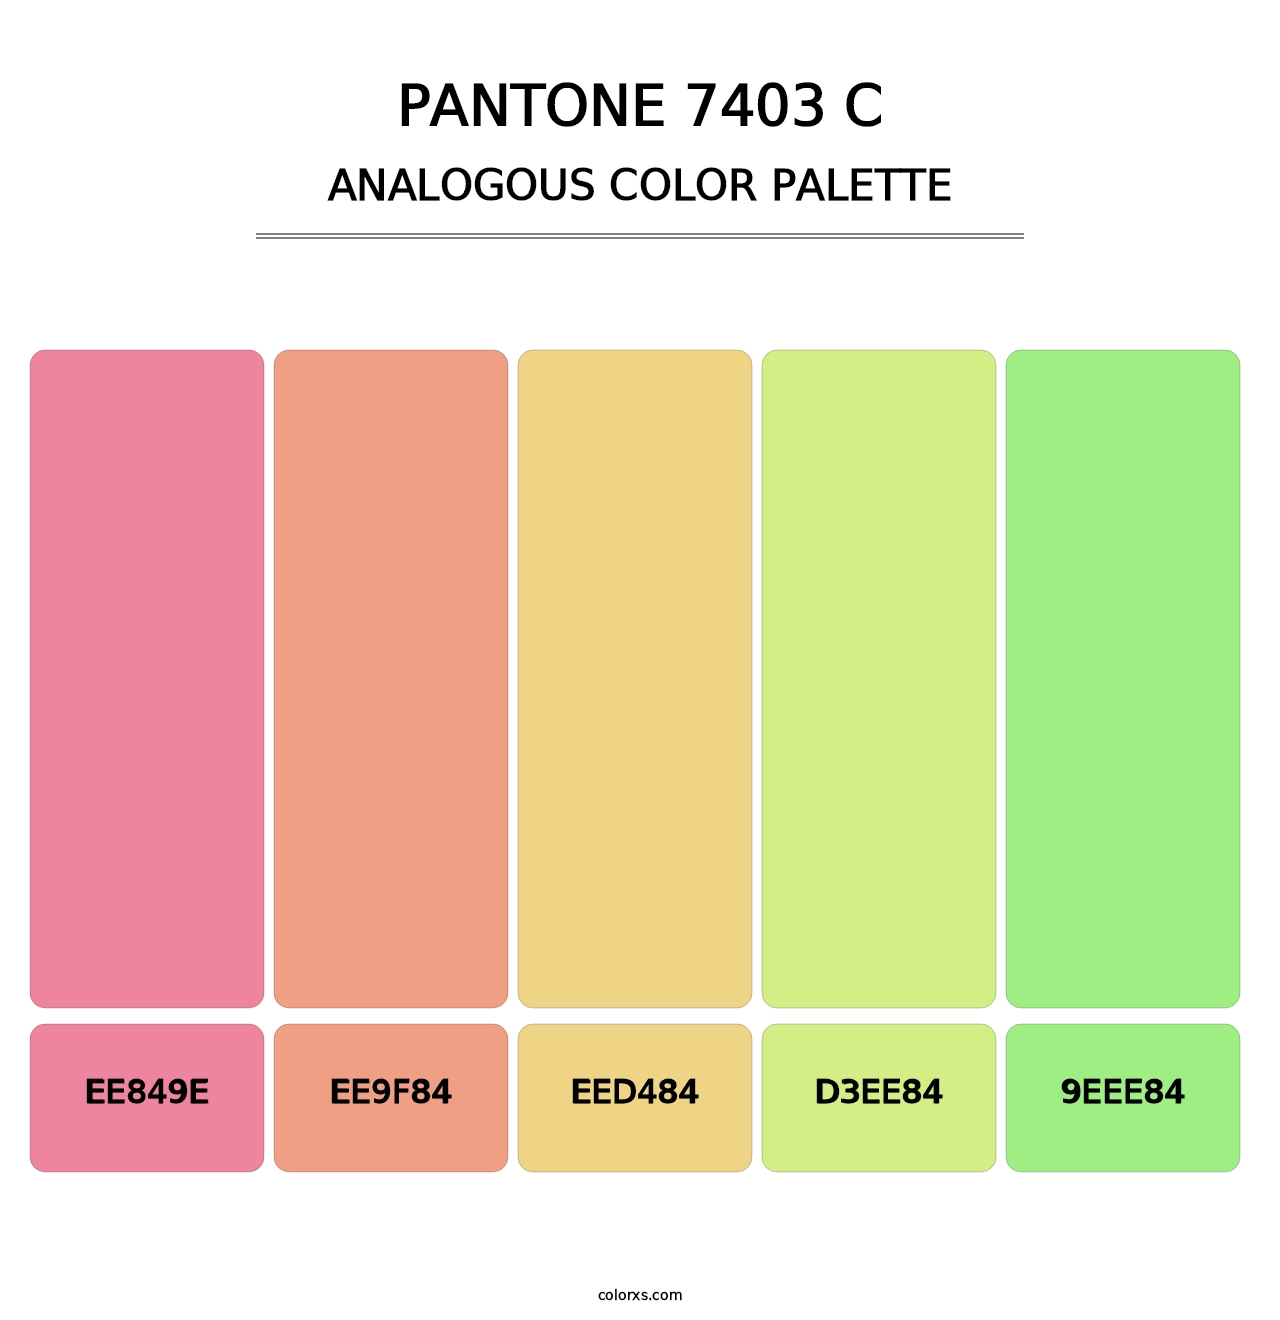 PANTONE 7403 C - Analogous Color Palette